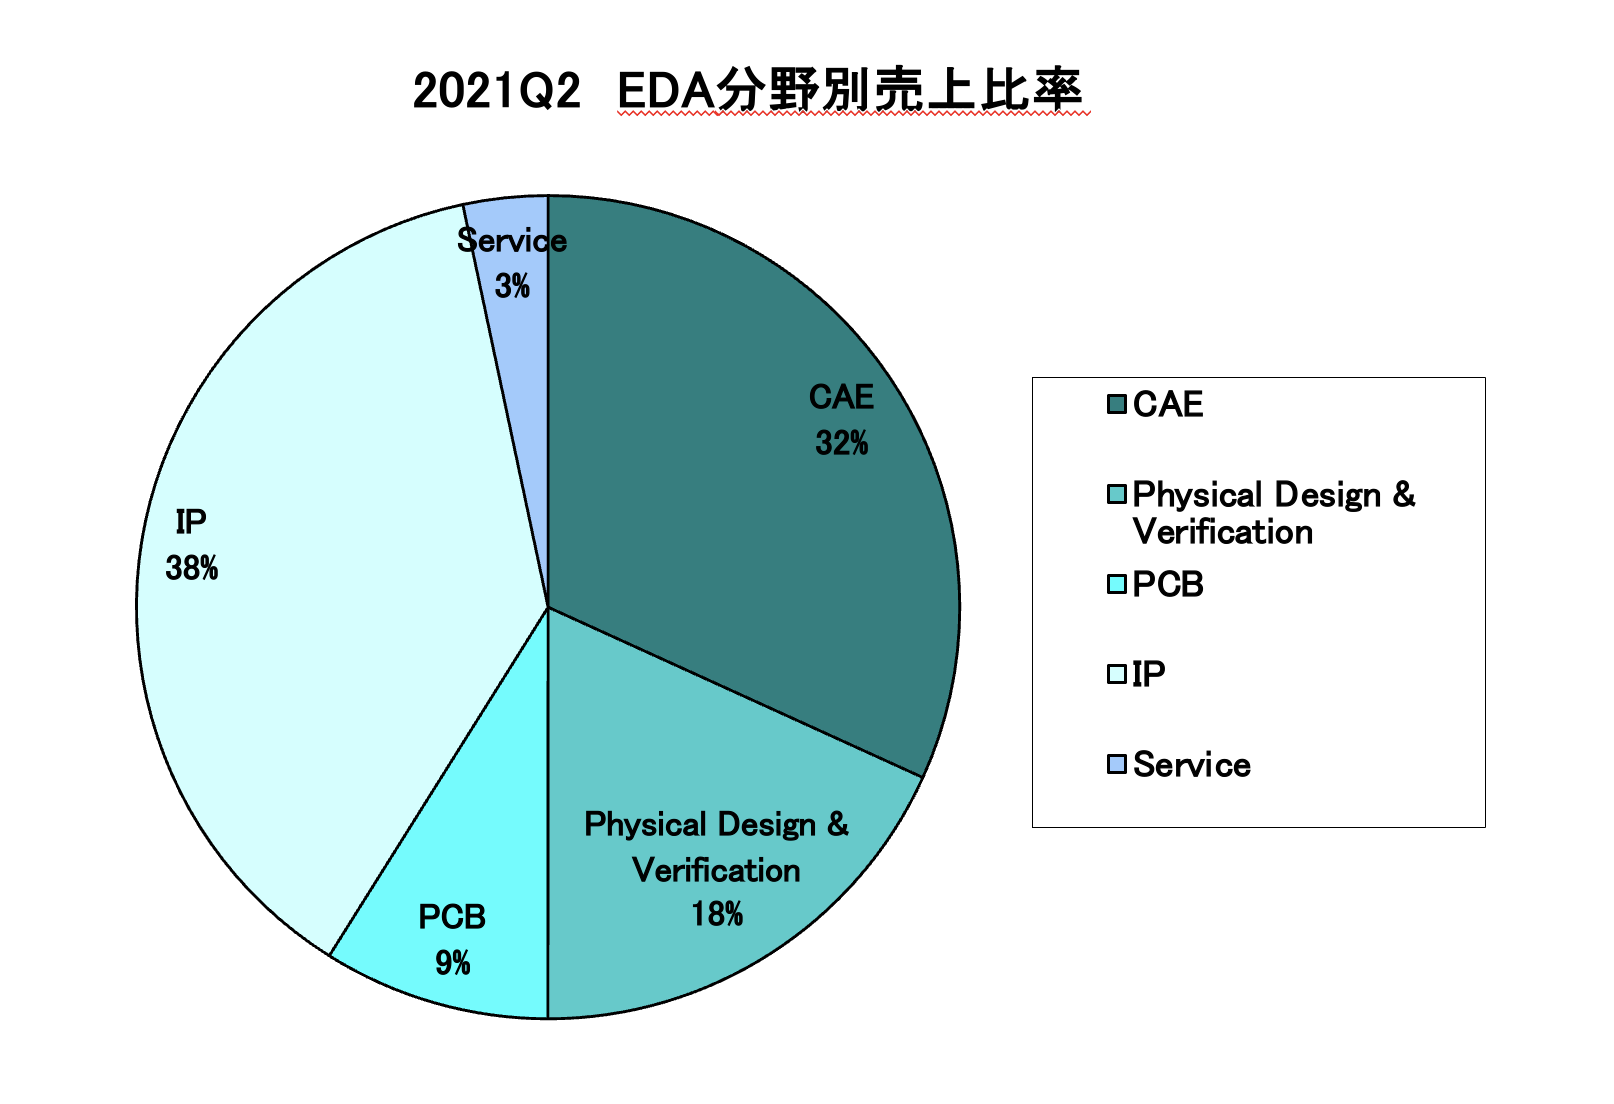 https://www.eda-express.com/%E3%82%B9%E3%82%AF%E3%83%AA%E3%83%BC%E3%83%B3%E3%82%B7%E3%83%A7%E3%83%83%E3%83%88%202021-11-19%2014.17.49.png